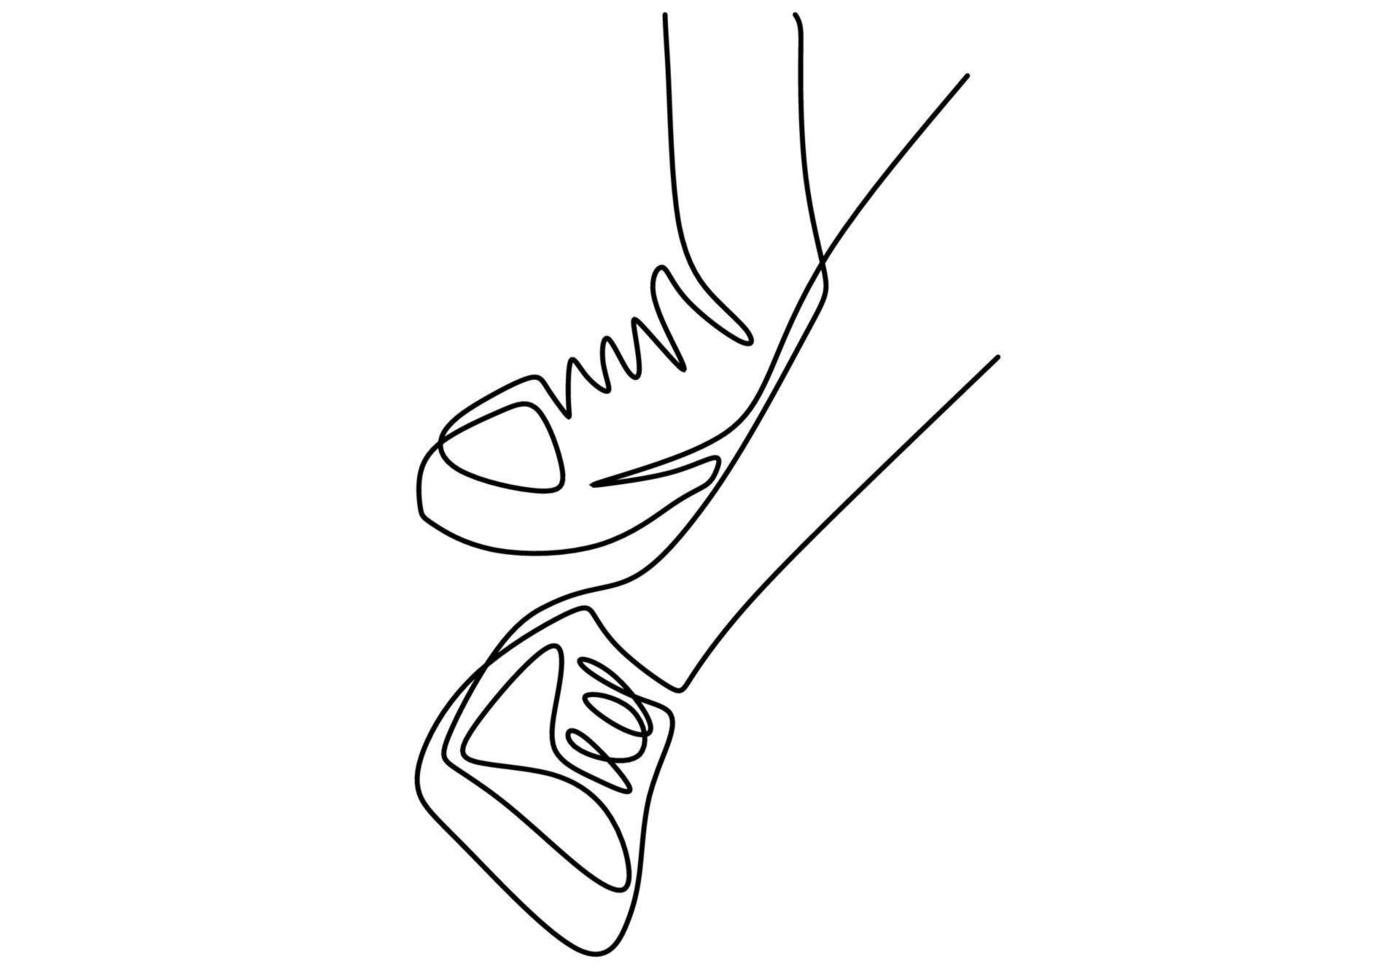 ett linje teckning av fot och skor isolerat på vit bakgrund. vektor